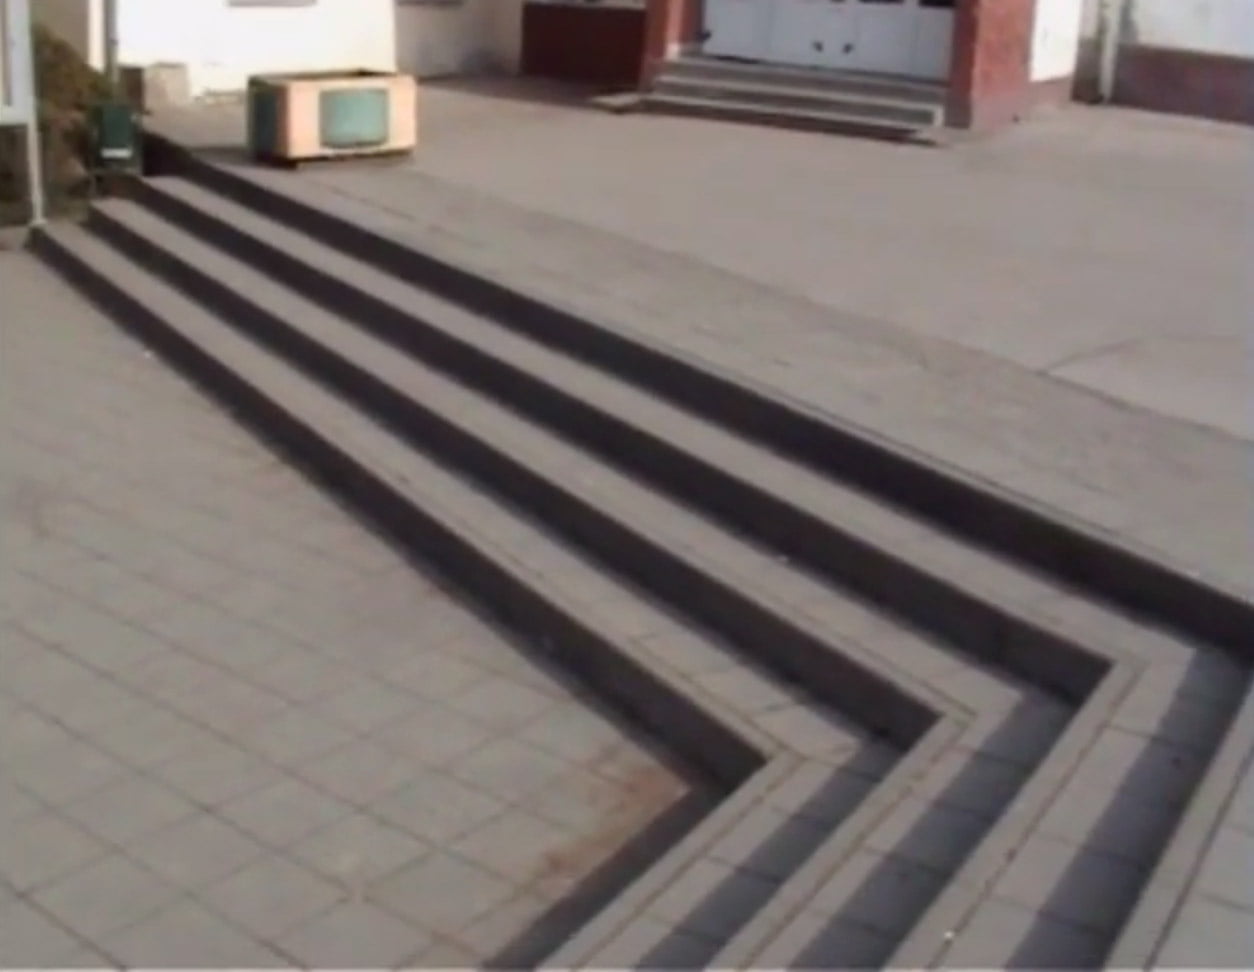 Skateboarding spots in Loznica city